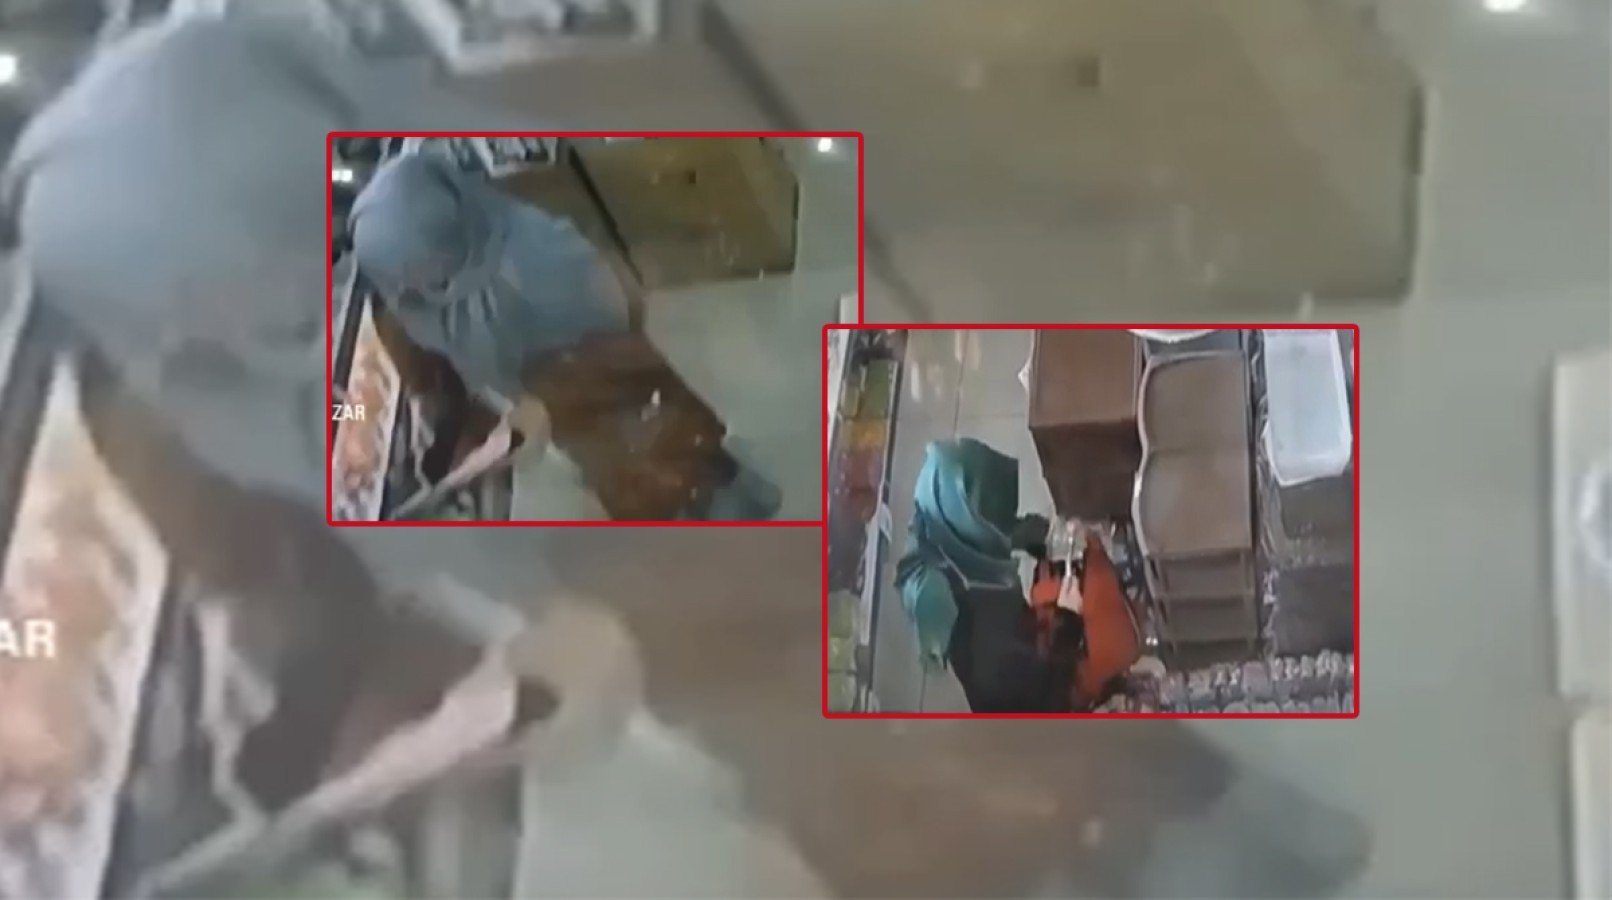 Urfa'da züccaciyedeki hırsızlık güvenlik kamerasında;